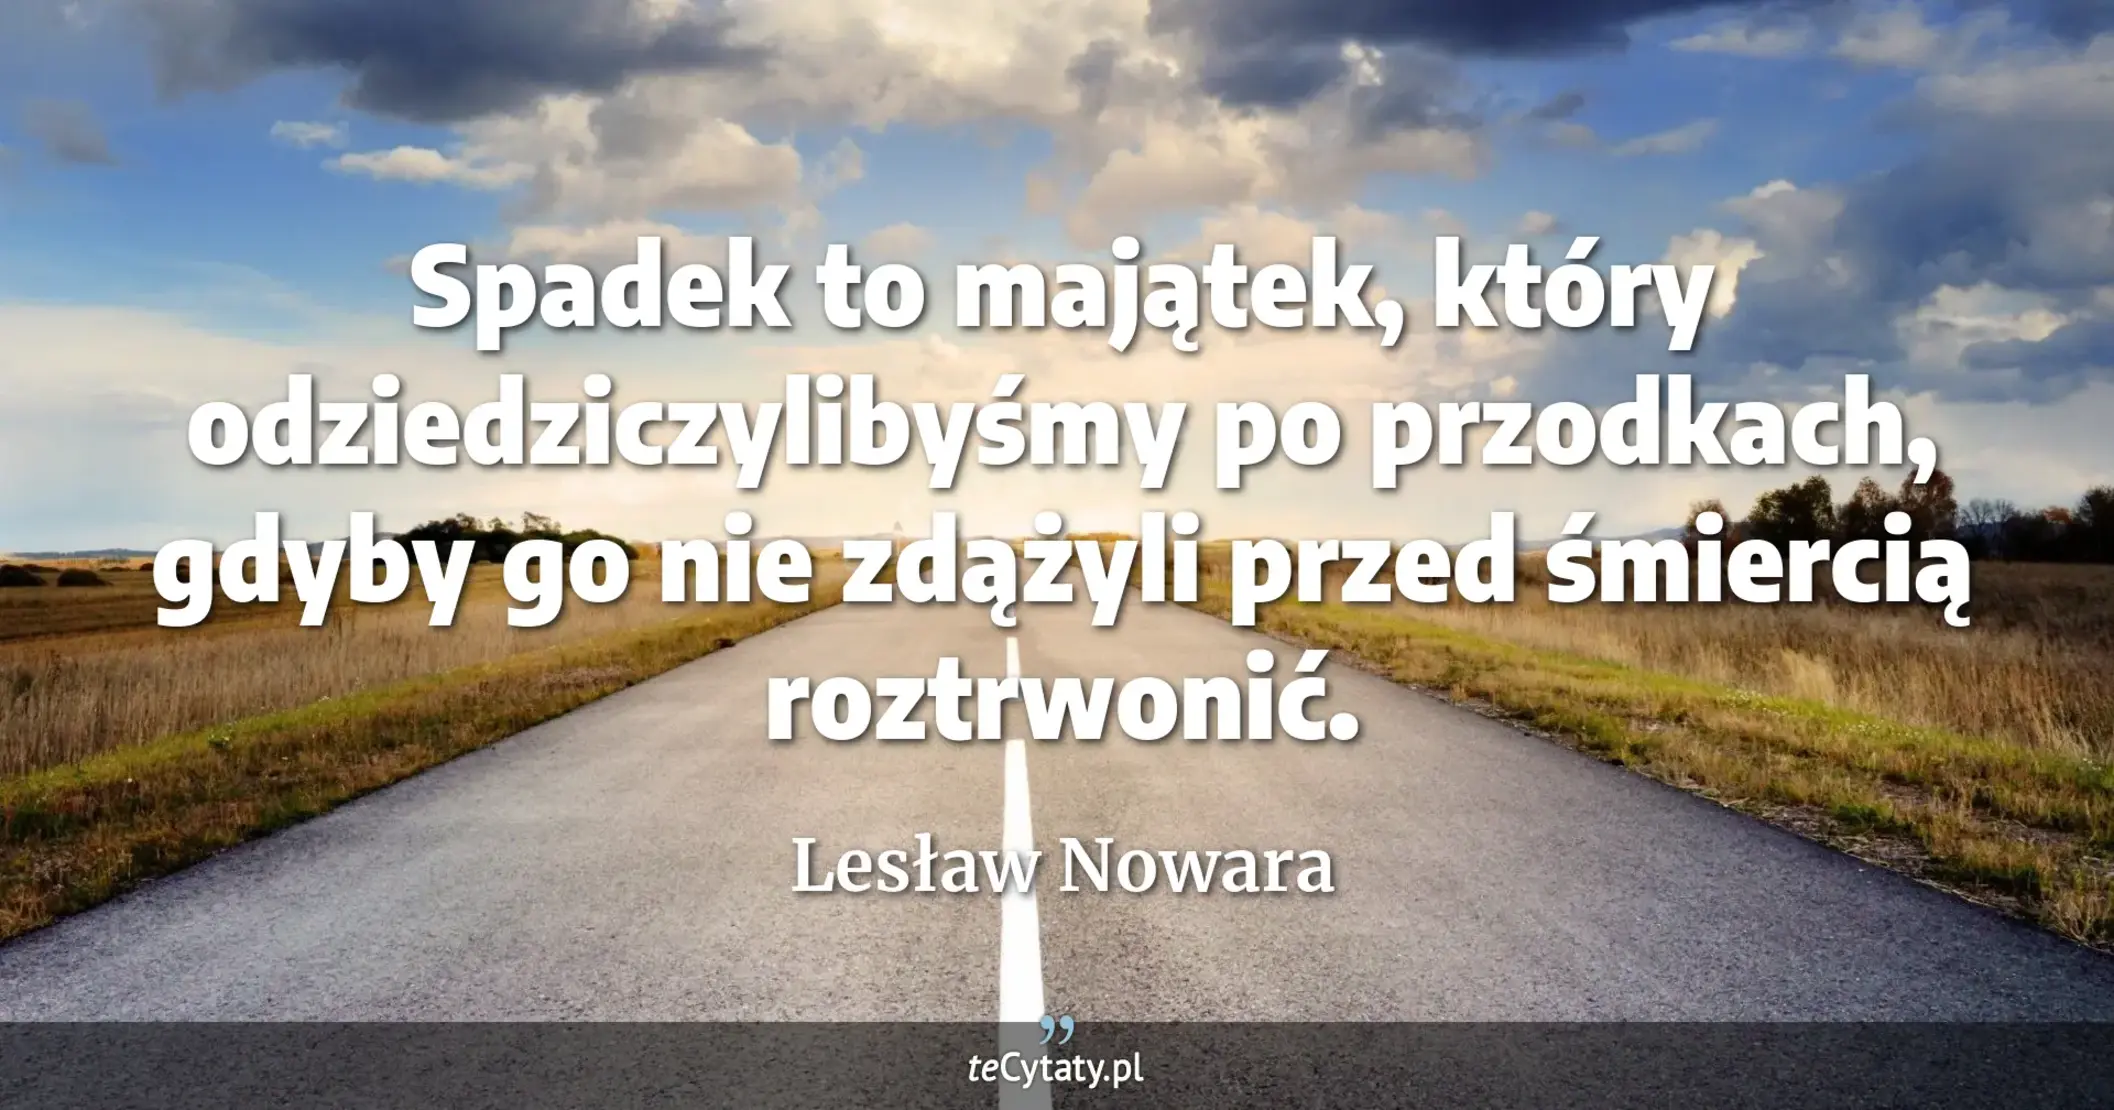 Spadek to majątek, który odziedziczylibyśmy po przodkach, gdyby go nie zdążyli przed śmiercią roztrwonić. - Lesław Nowara